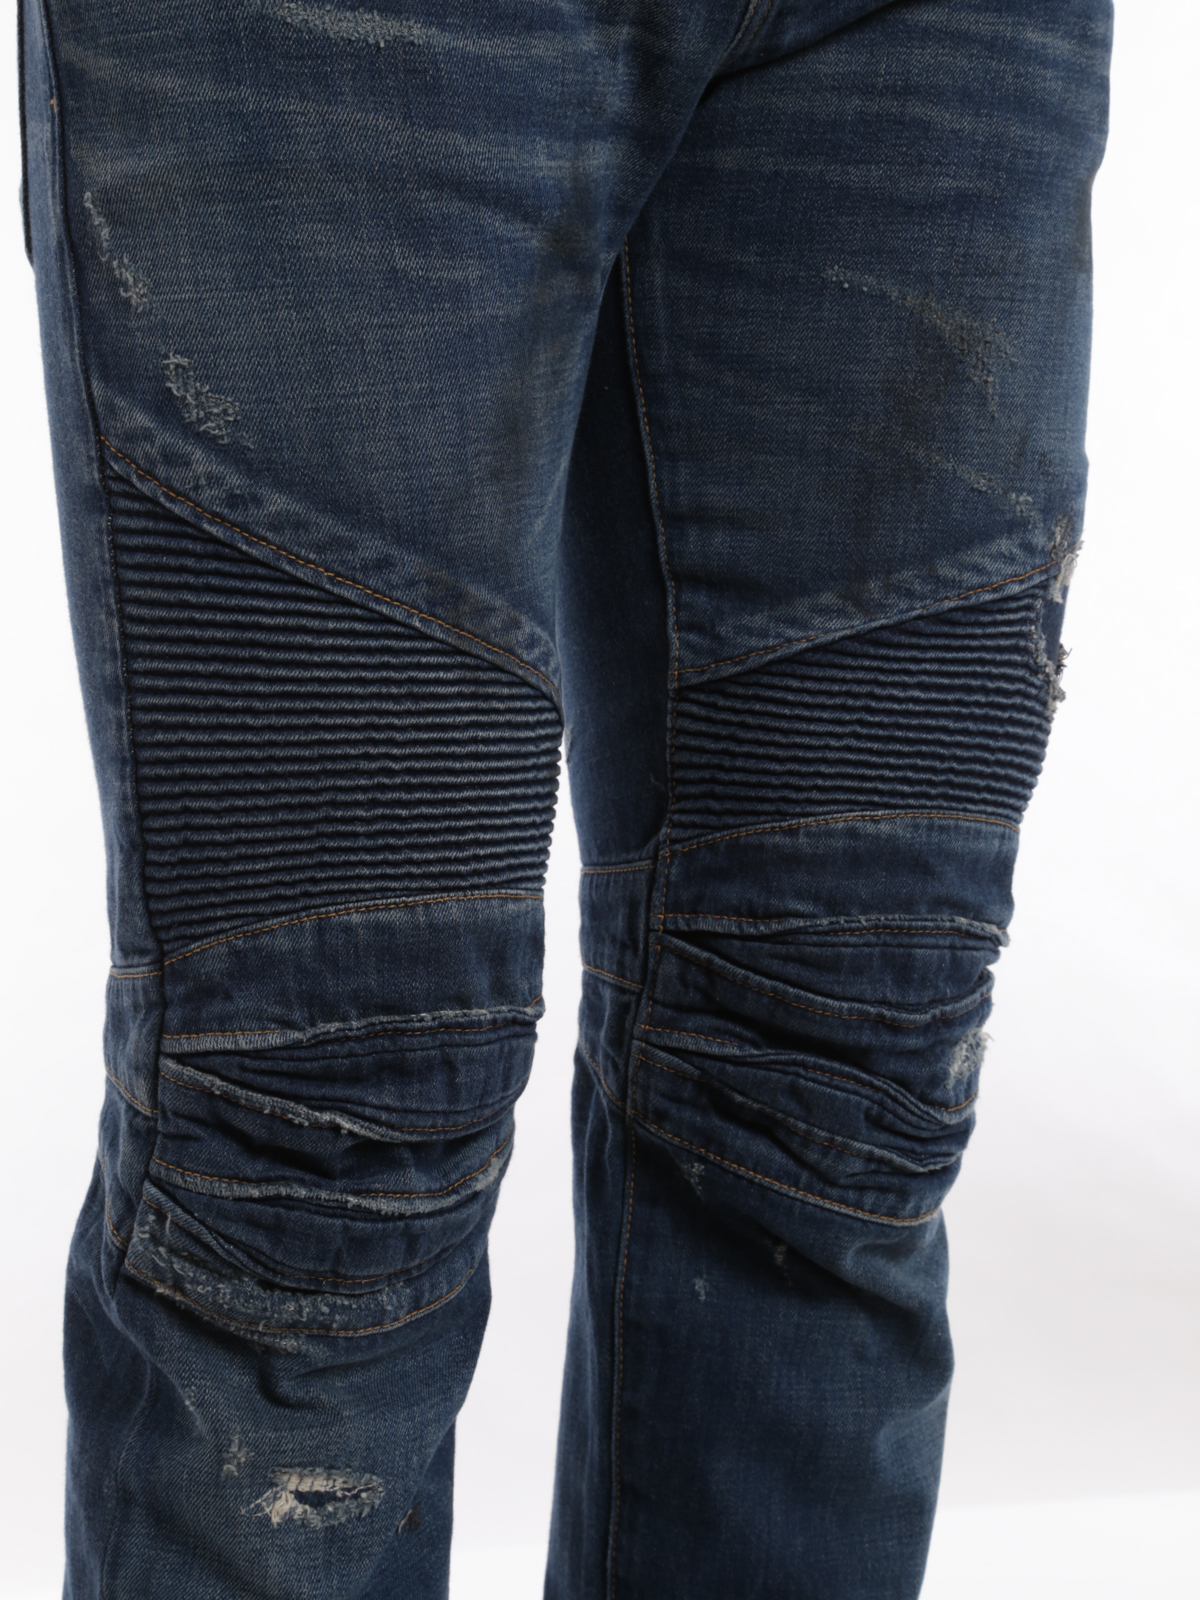 balmain style jeans cheap